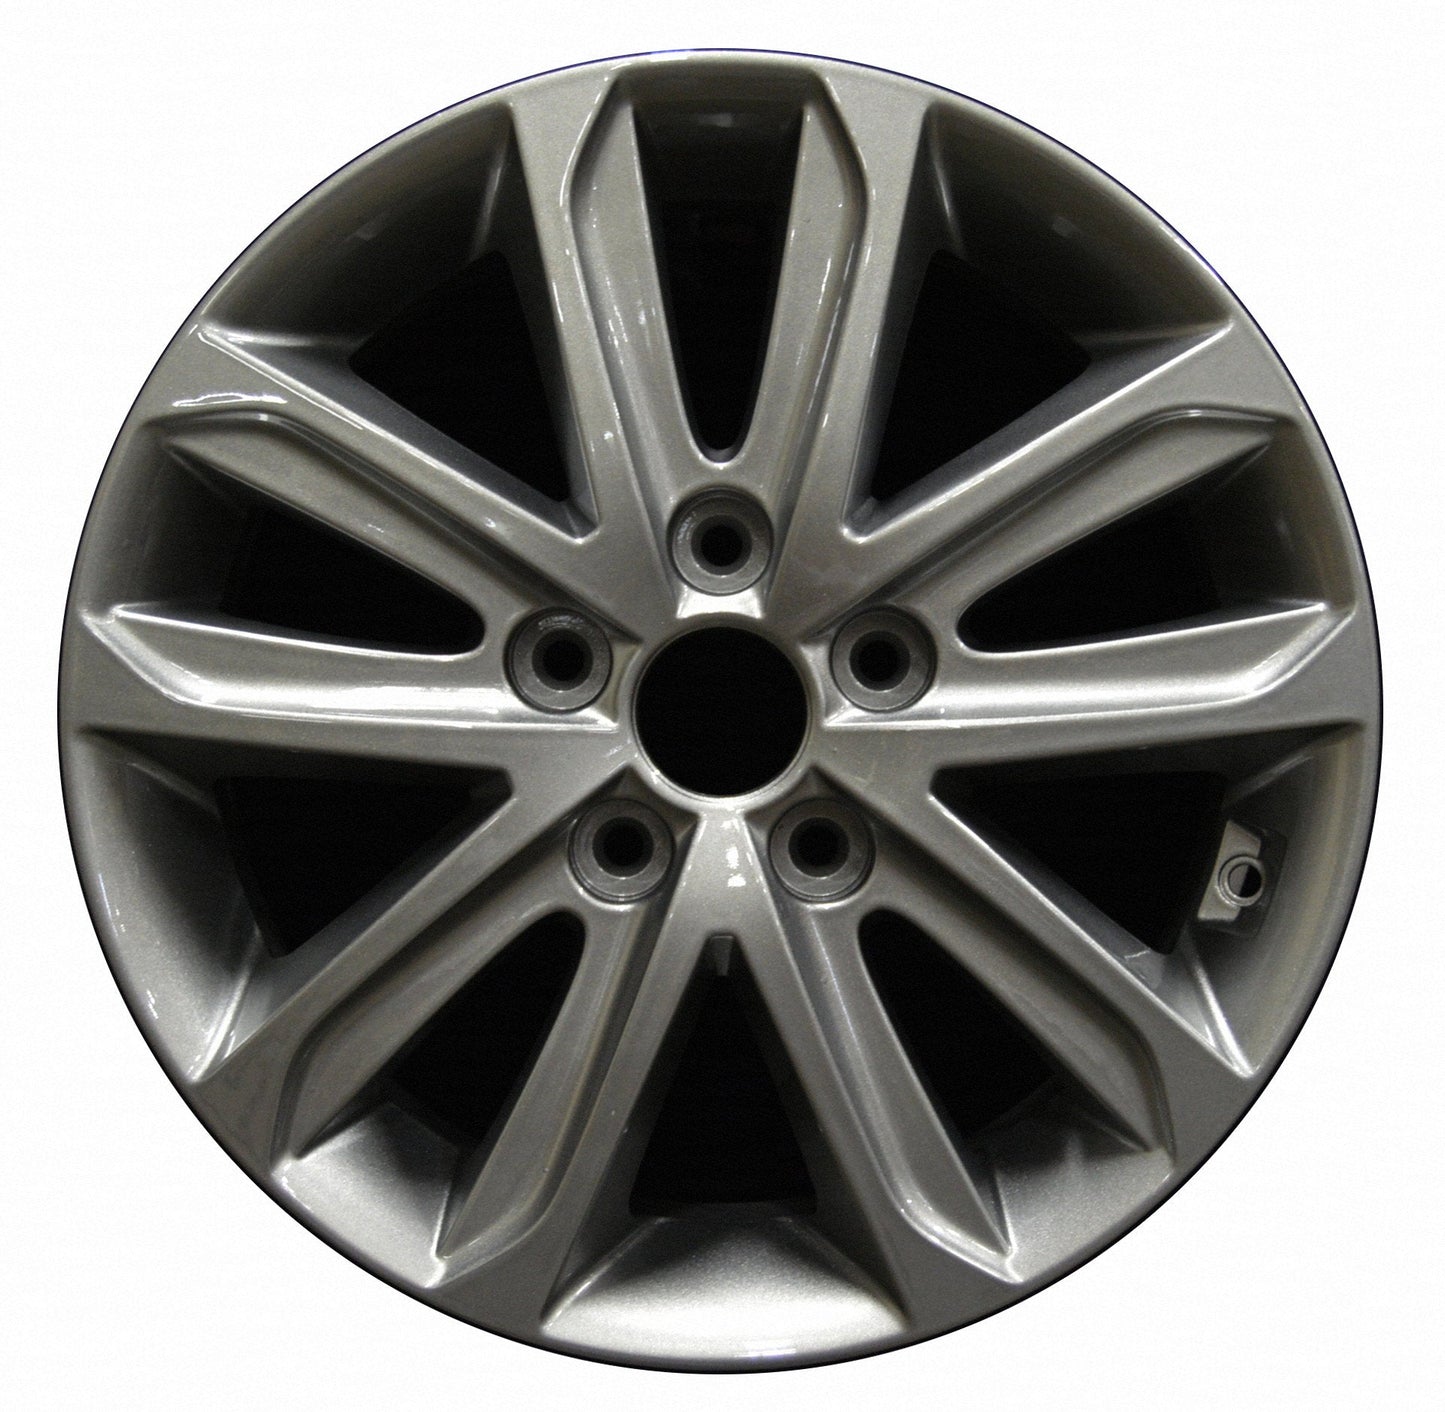 Hyundai Elantra  2014, 2015, 2016 Factory OEM Car Wheel Size 16x6.5 Alloy WAO.70859.LS33.FF